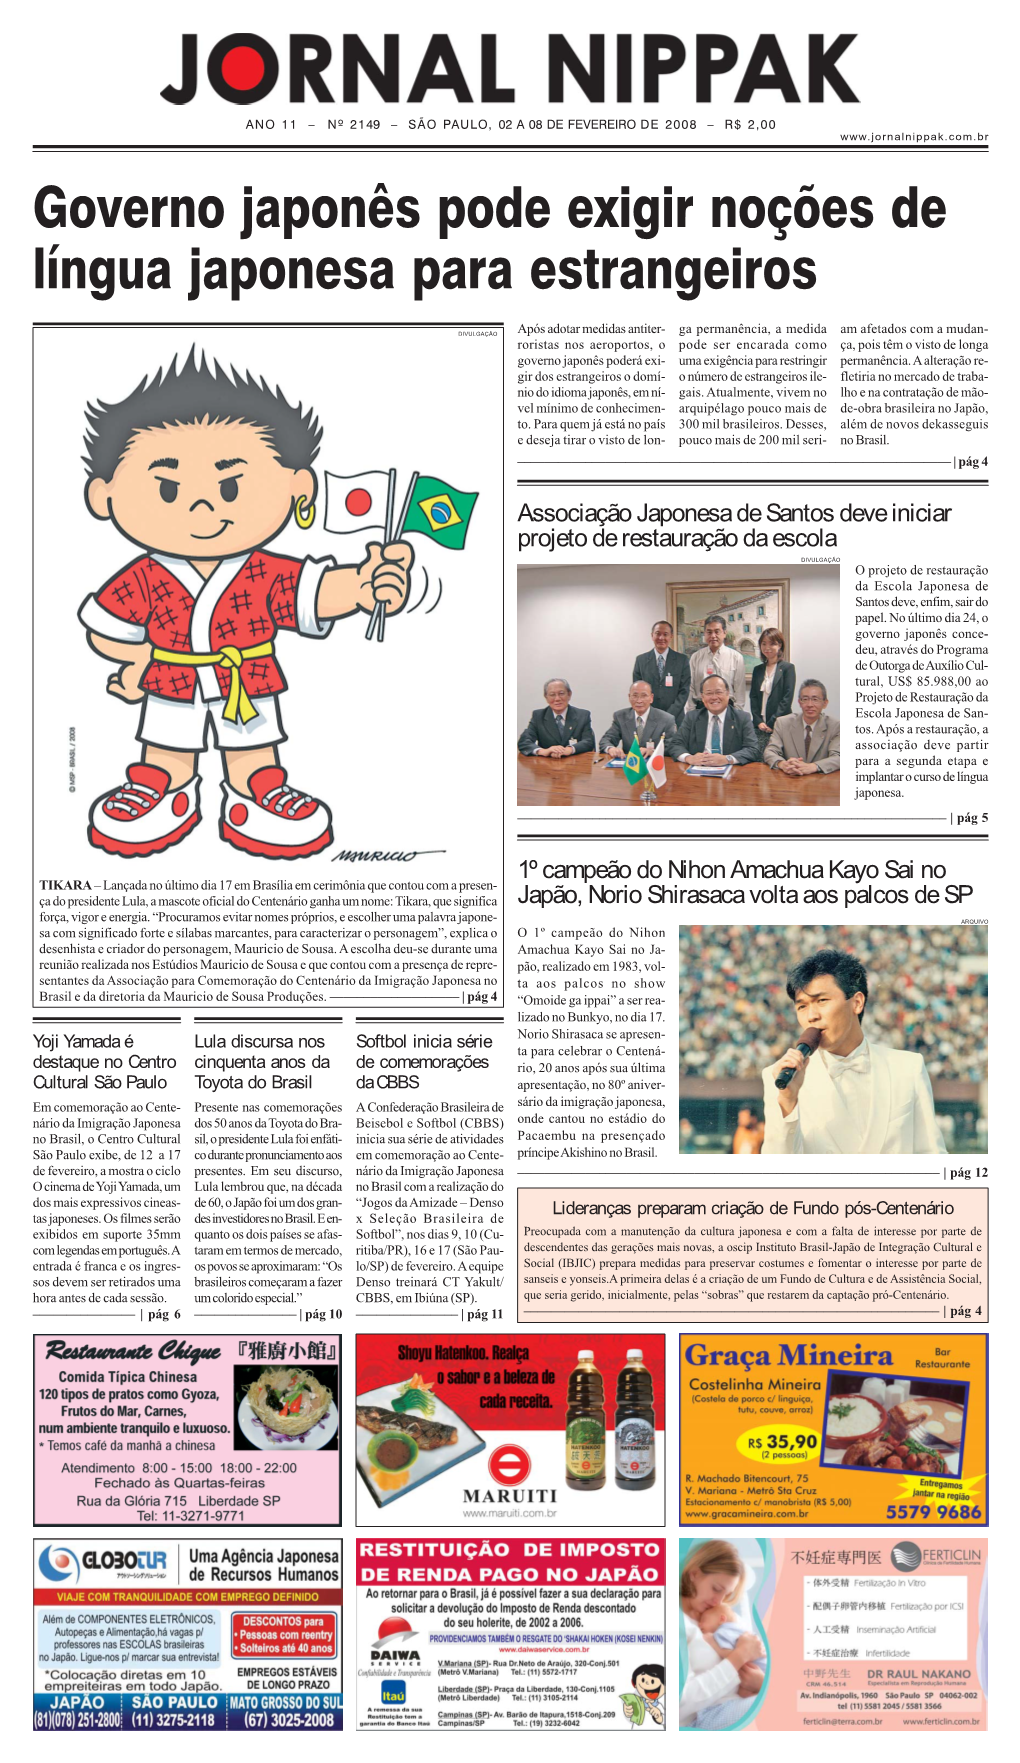 Palmeiras Homenageia 100 Anos De Imigração Japonesa